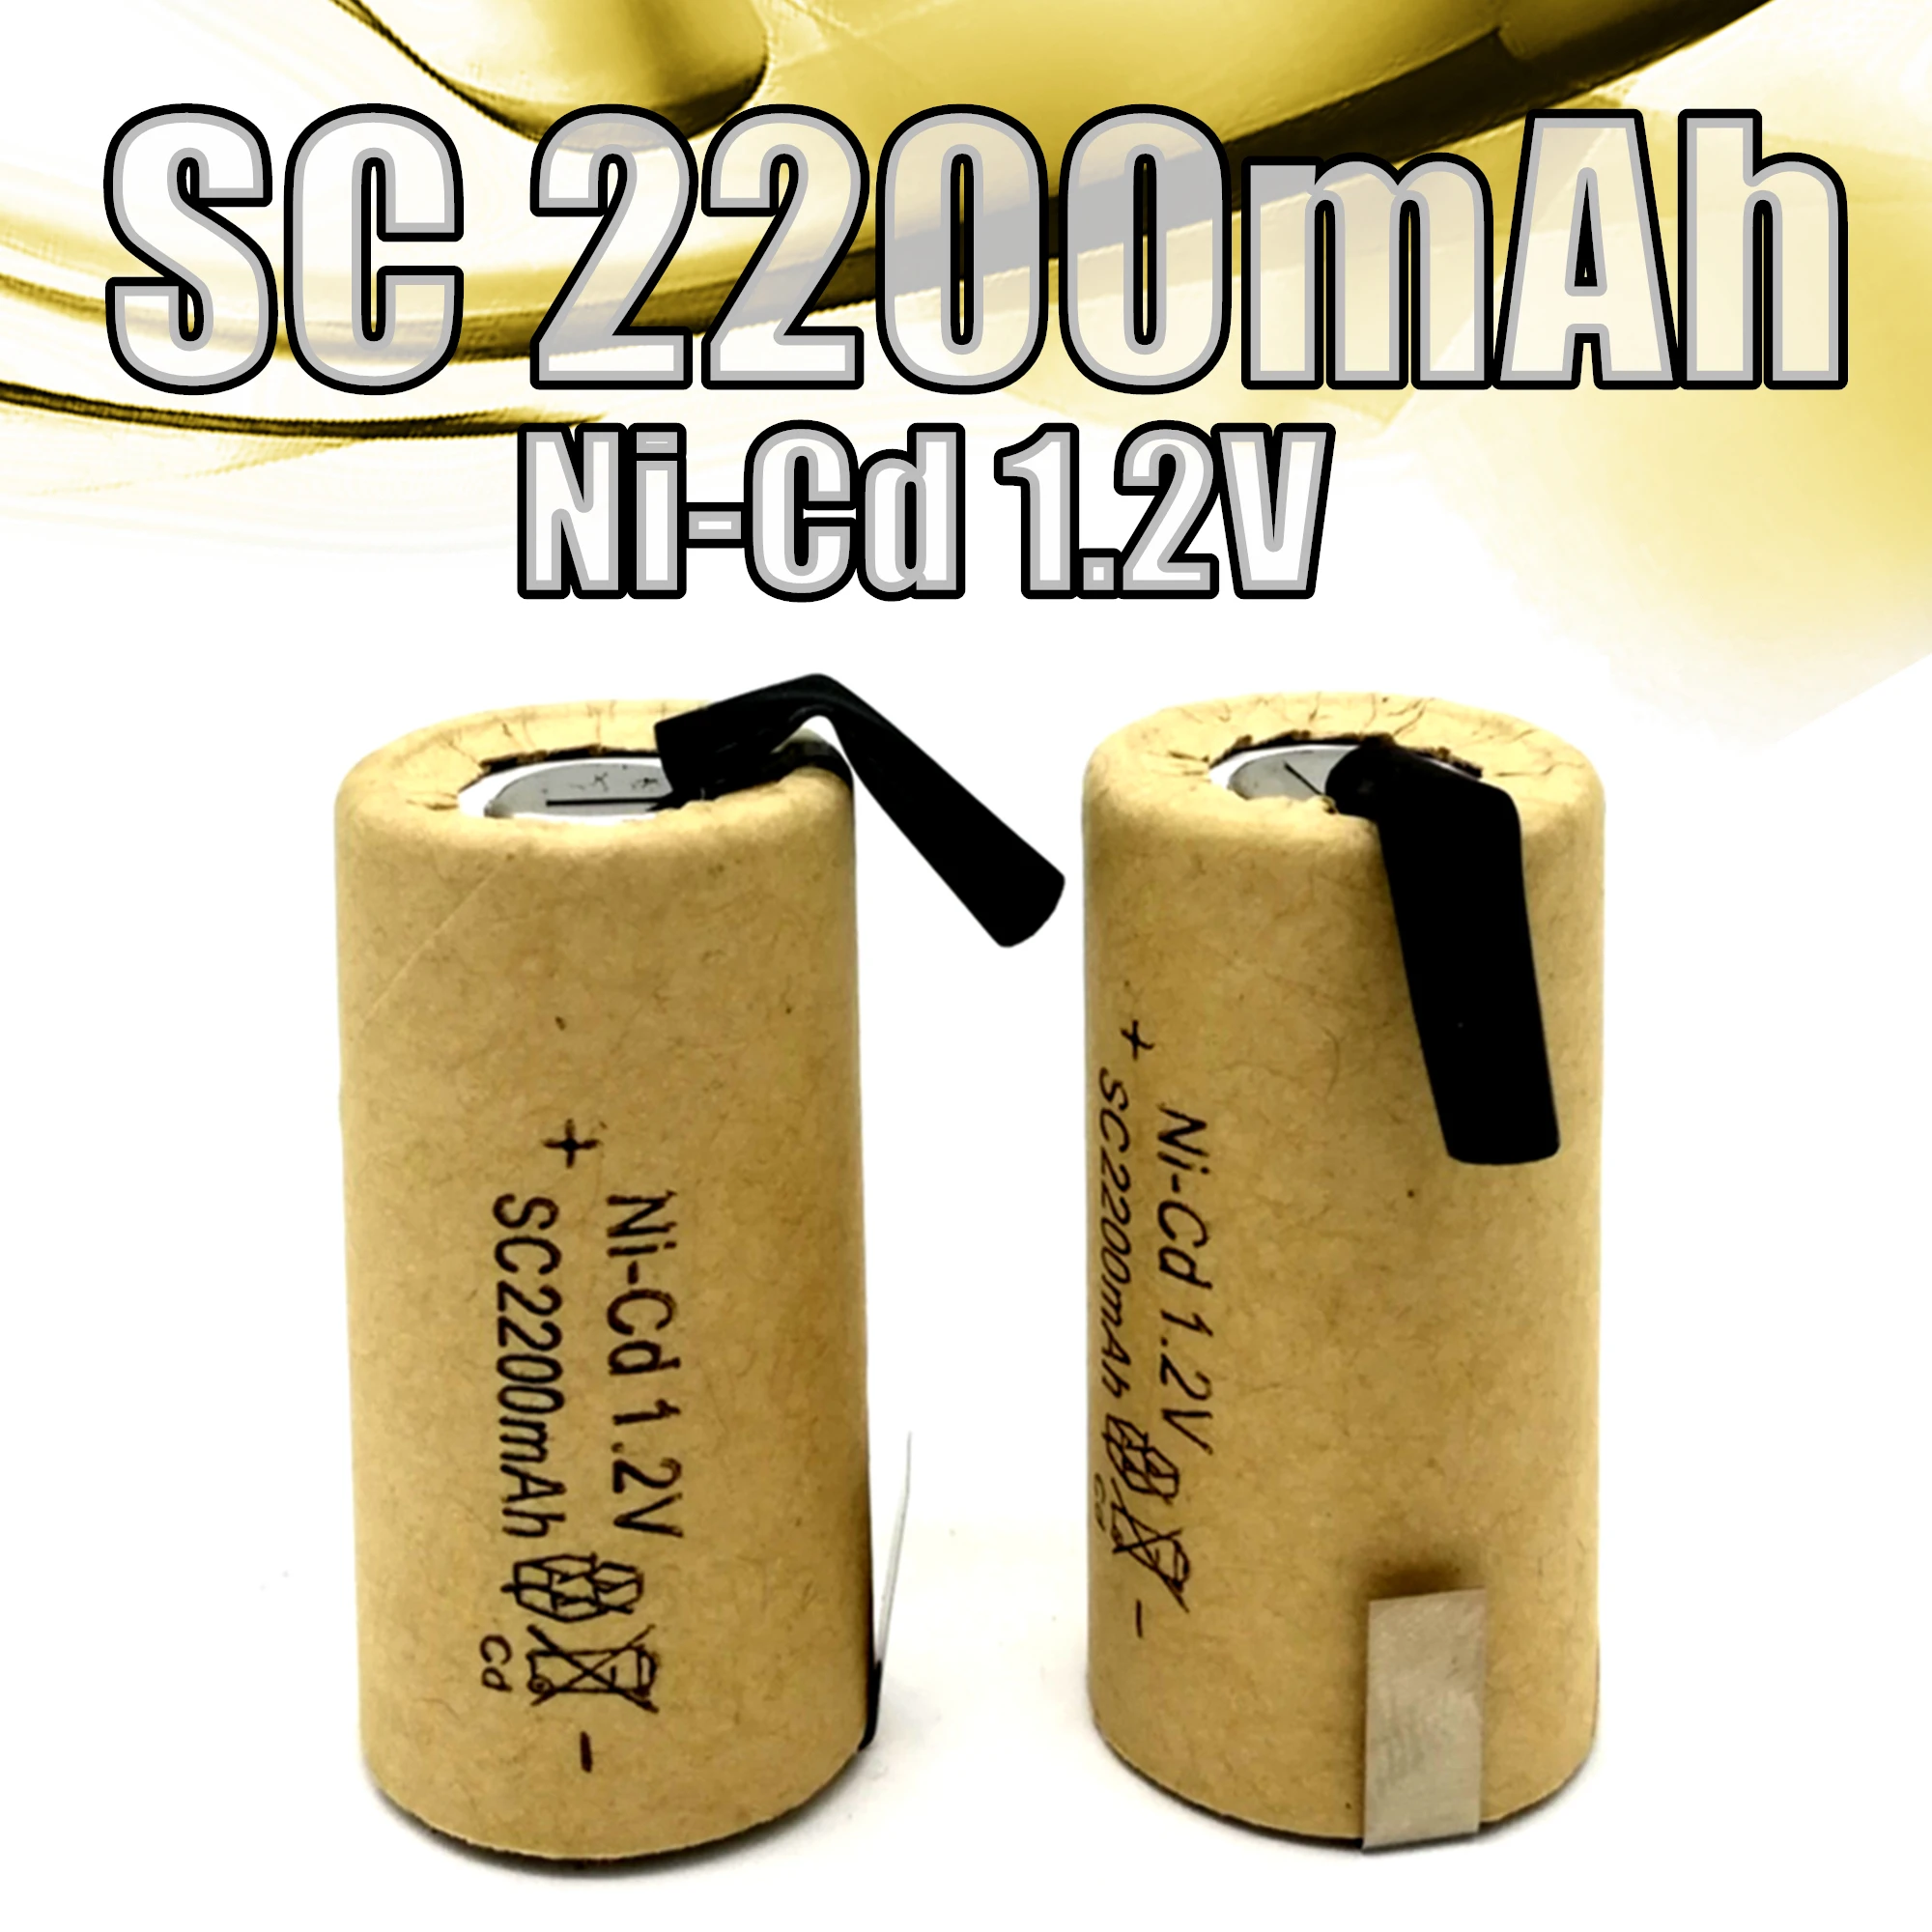 

13 шт./лот SC NI-Cd 1,2 в 2200 мАч Sub C перезаряжаемая батарея, с вкладками, для пылесоса, электрической дрели, электронного продукта